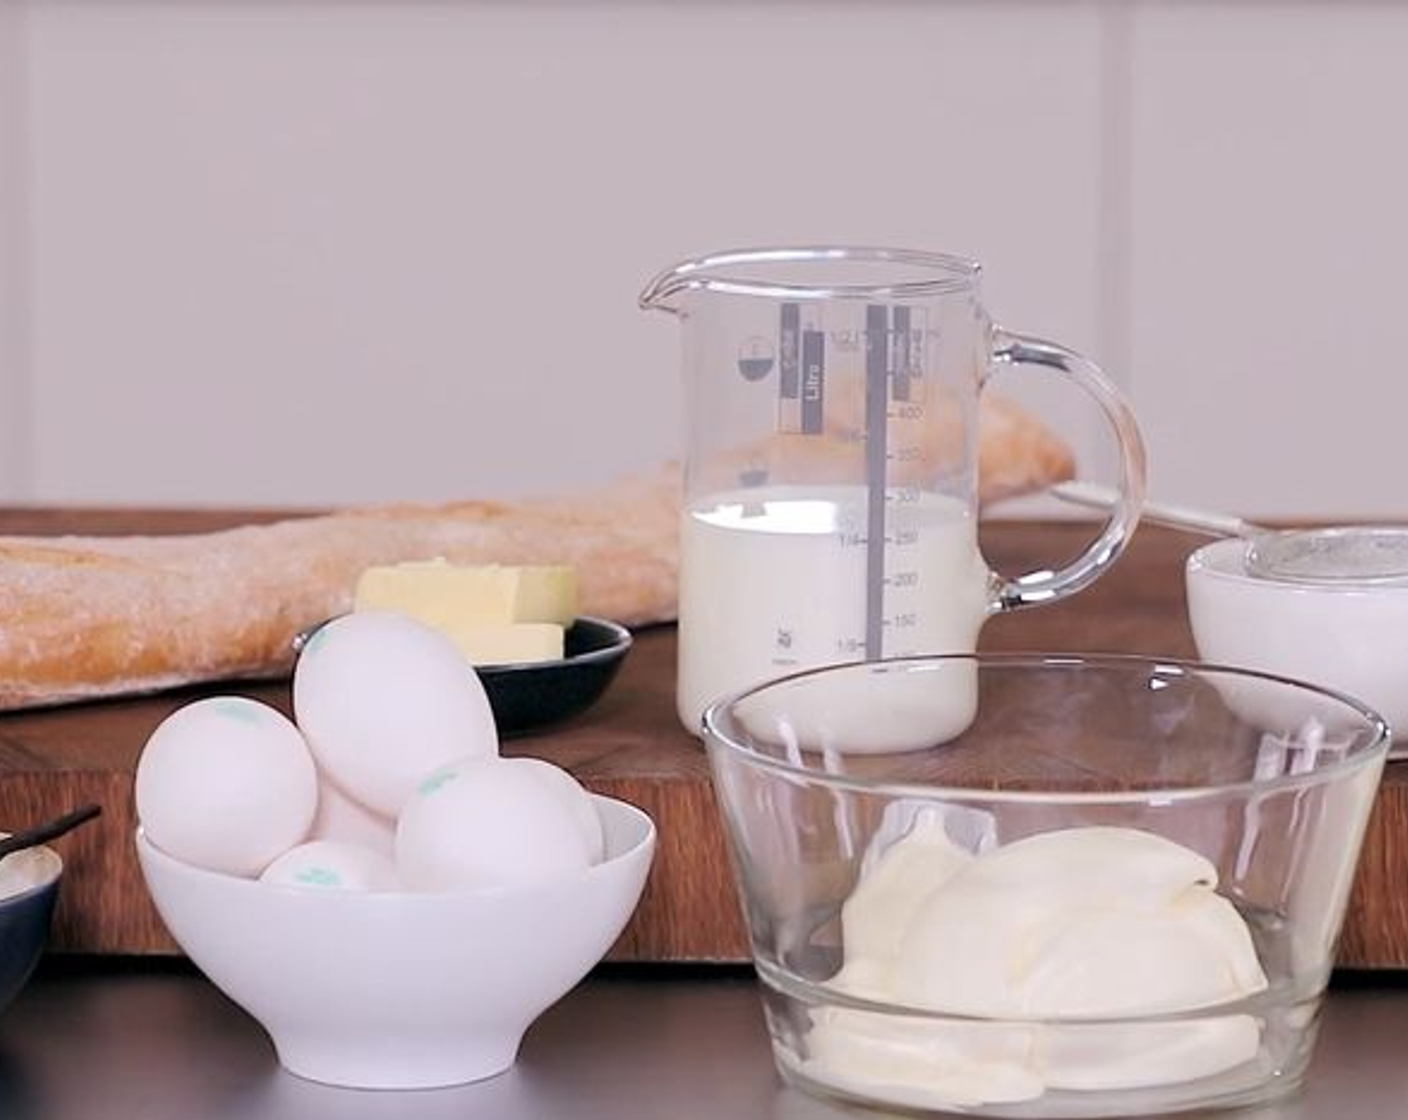 Schritt 1 Form grosszügig mit Butter (2 Esslöffel) einfetten. Dann die Vanilleschote (1) auskratzen. Eier (6), Zucker (200 g), Milch (250 ml), Rahm (500 ml), Doppelrahm (250 ml) und Vanillemark gründlich mit einem Pürierstab vermischen.